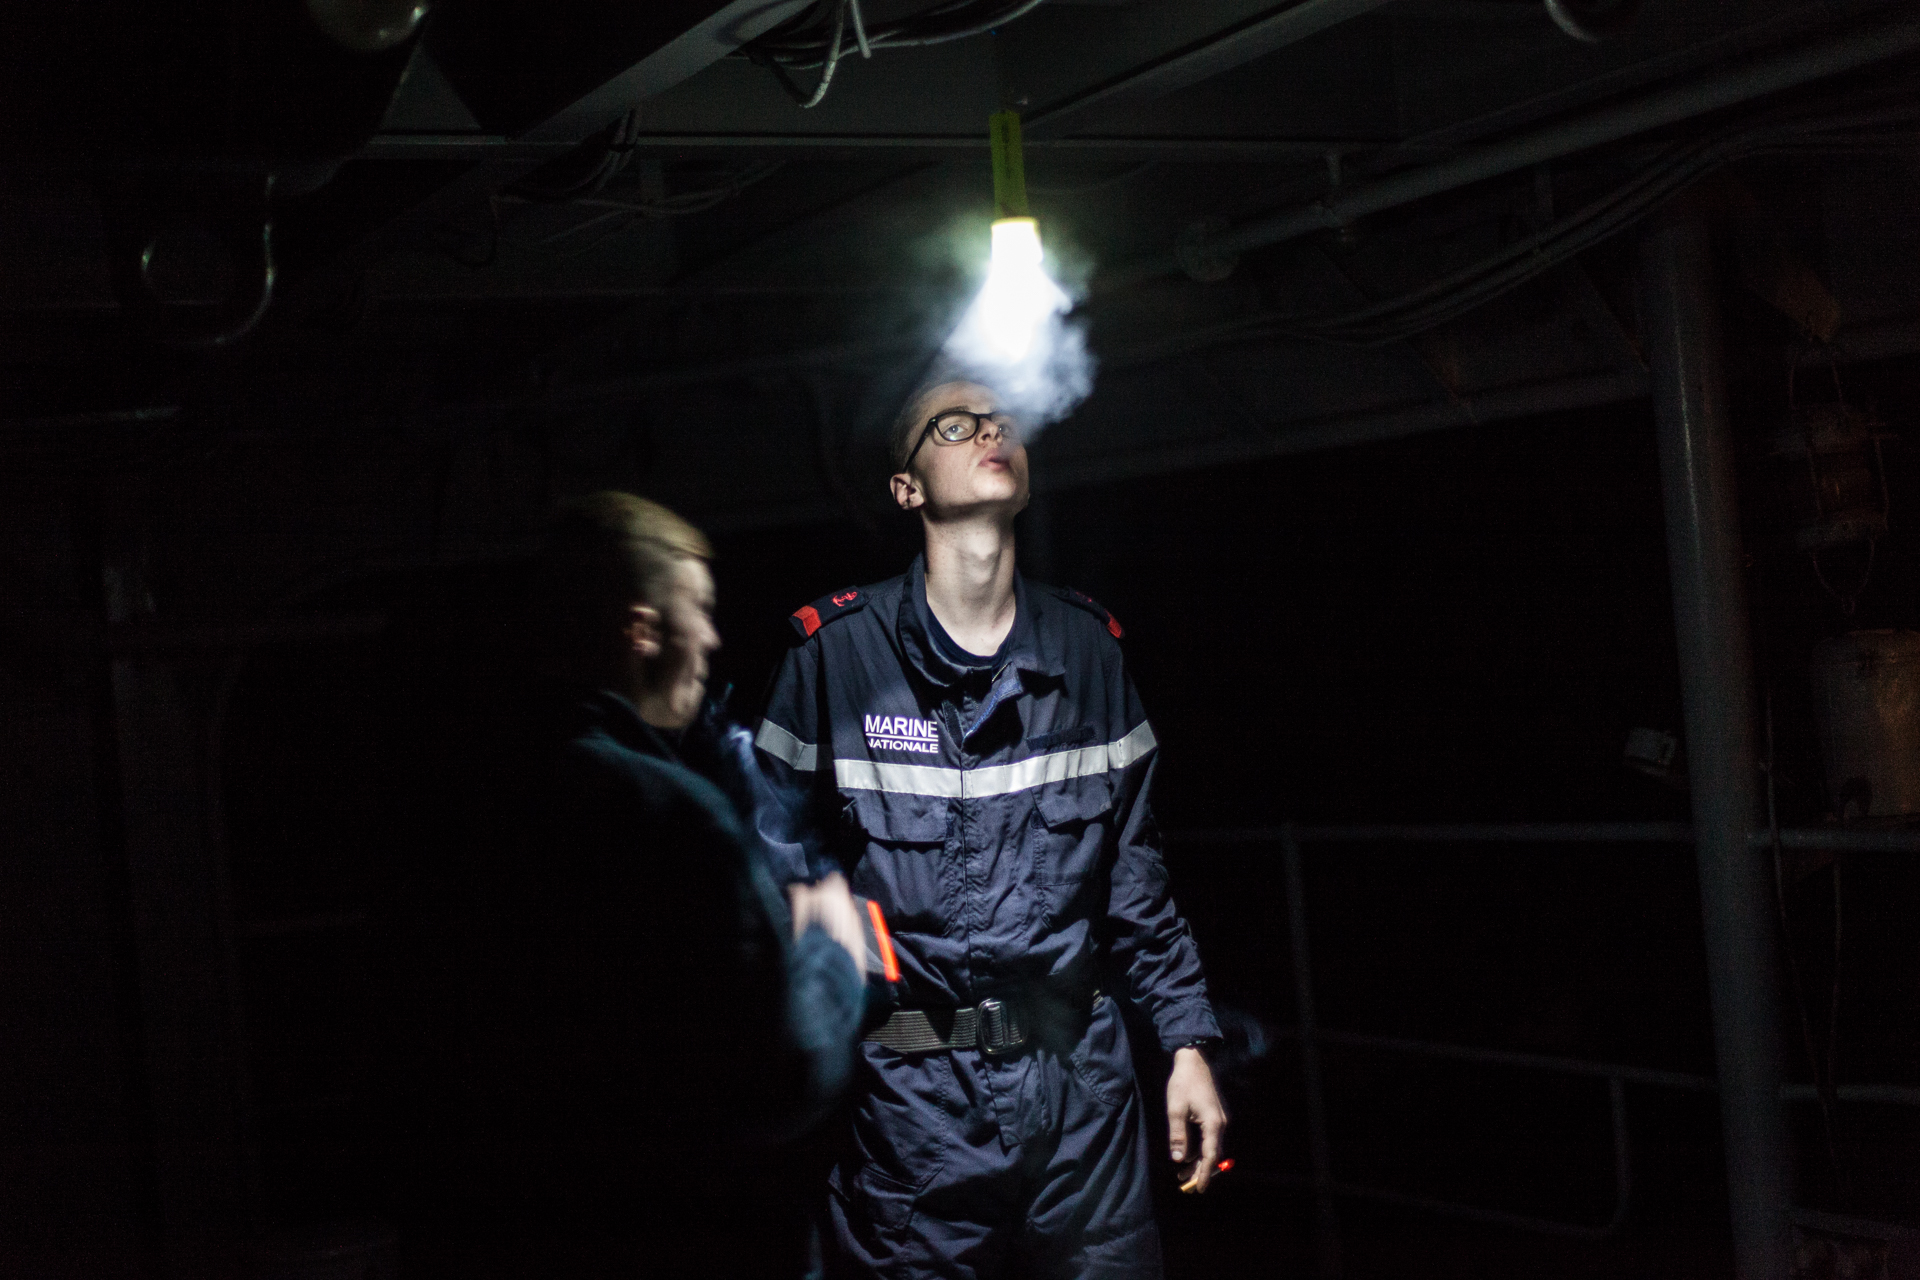  Mer méditerrannée, 01.12.2015. Pause cigarette pour un membre de l'équipage, sur la plage arrière de la frégate le "Jean Bart", lors d'exercices interarmées en Méditerrannée. 